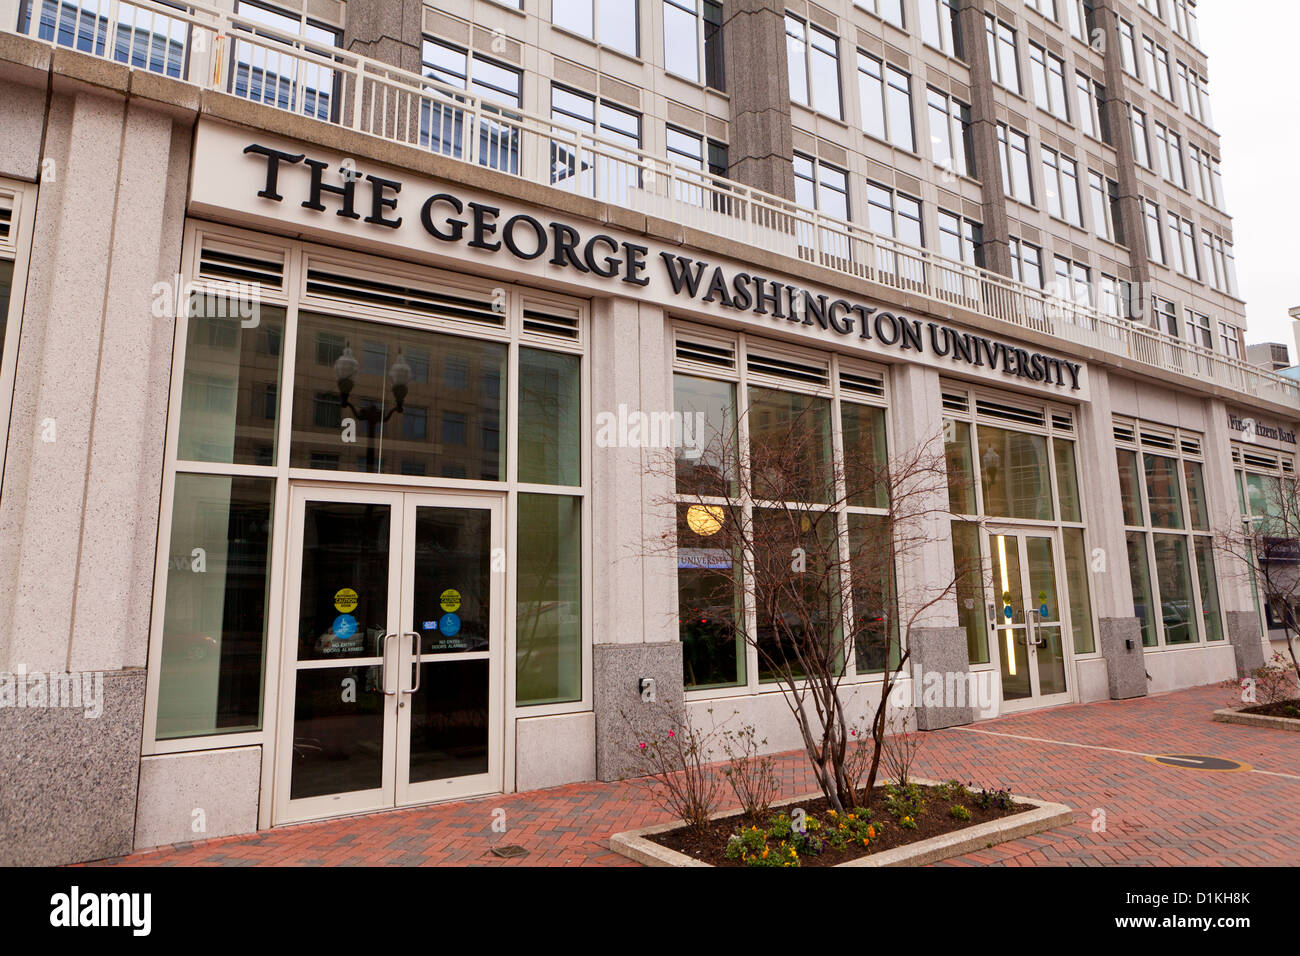 George Washington University building Stock Photo